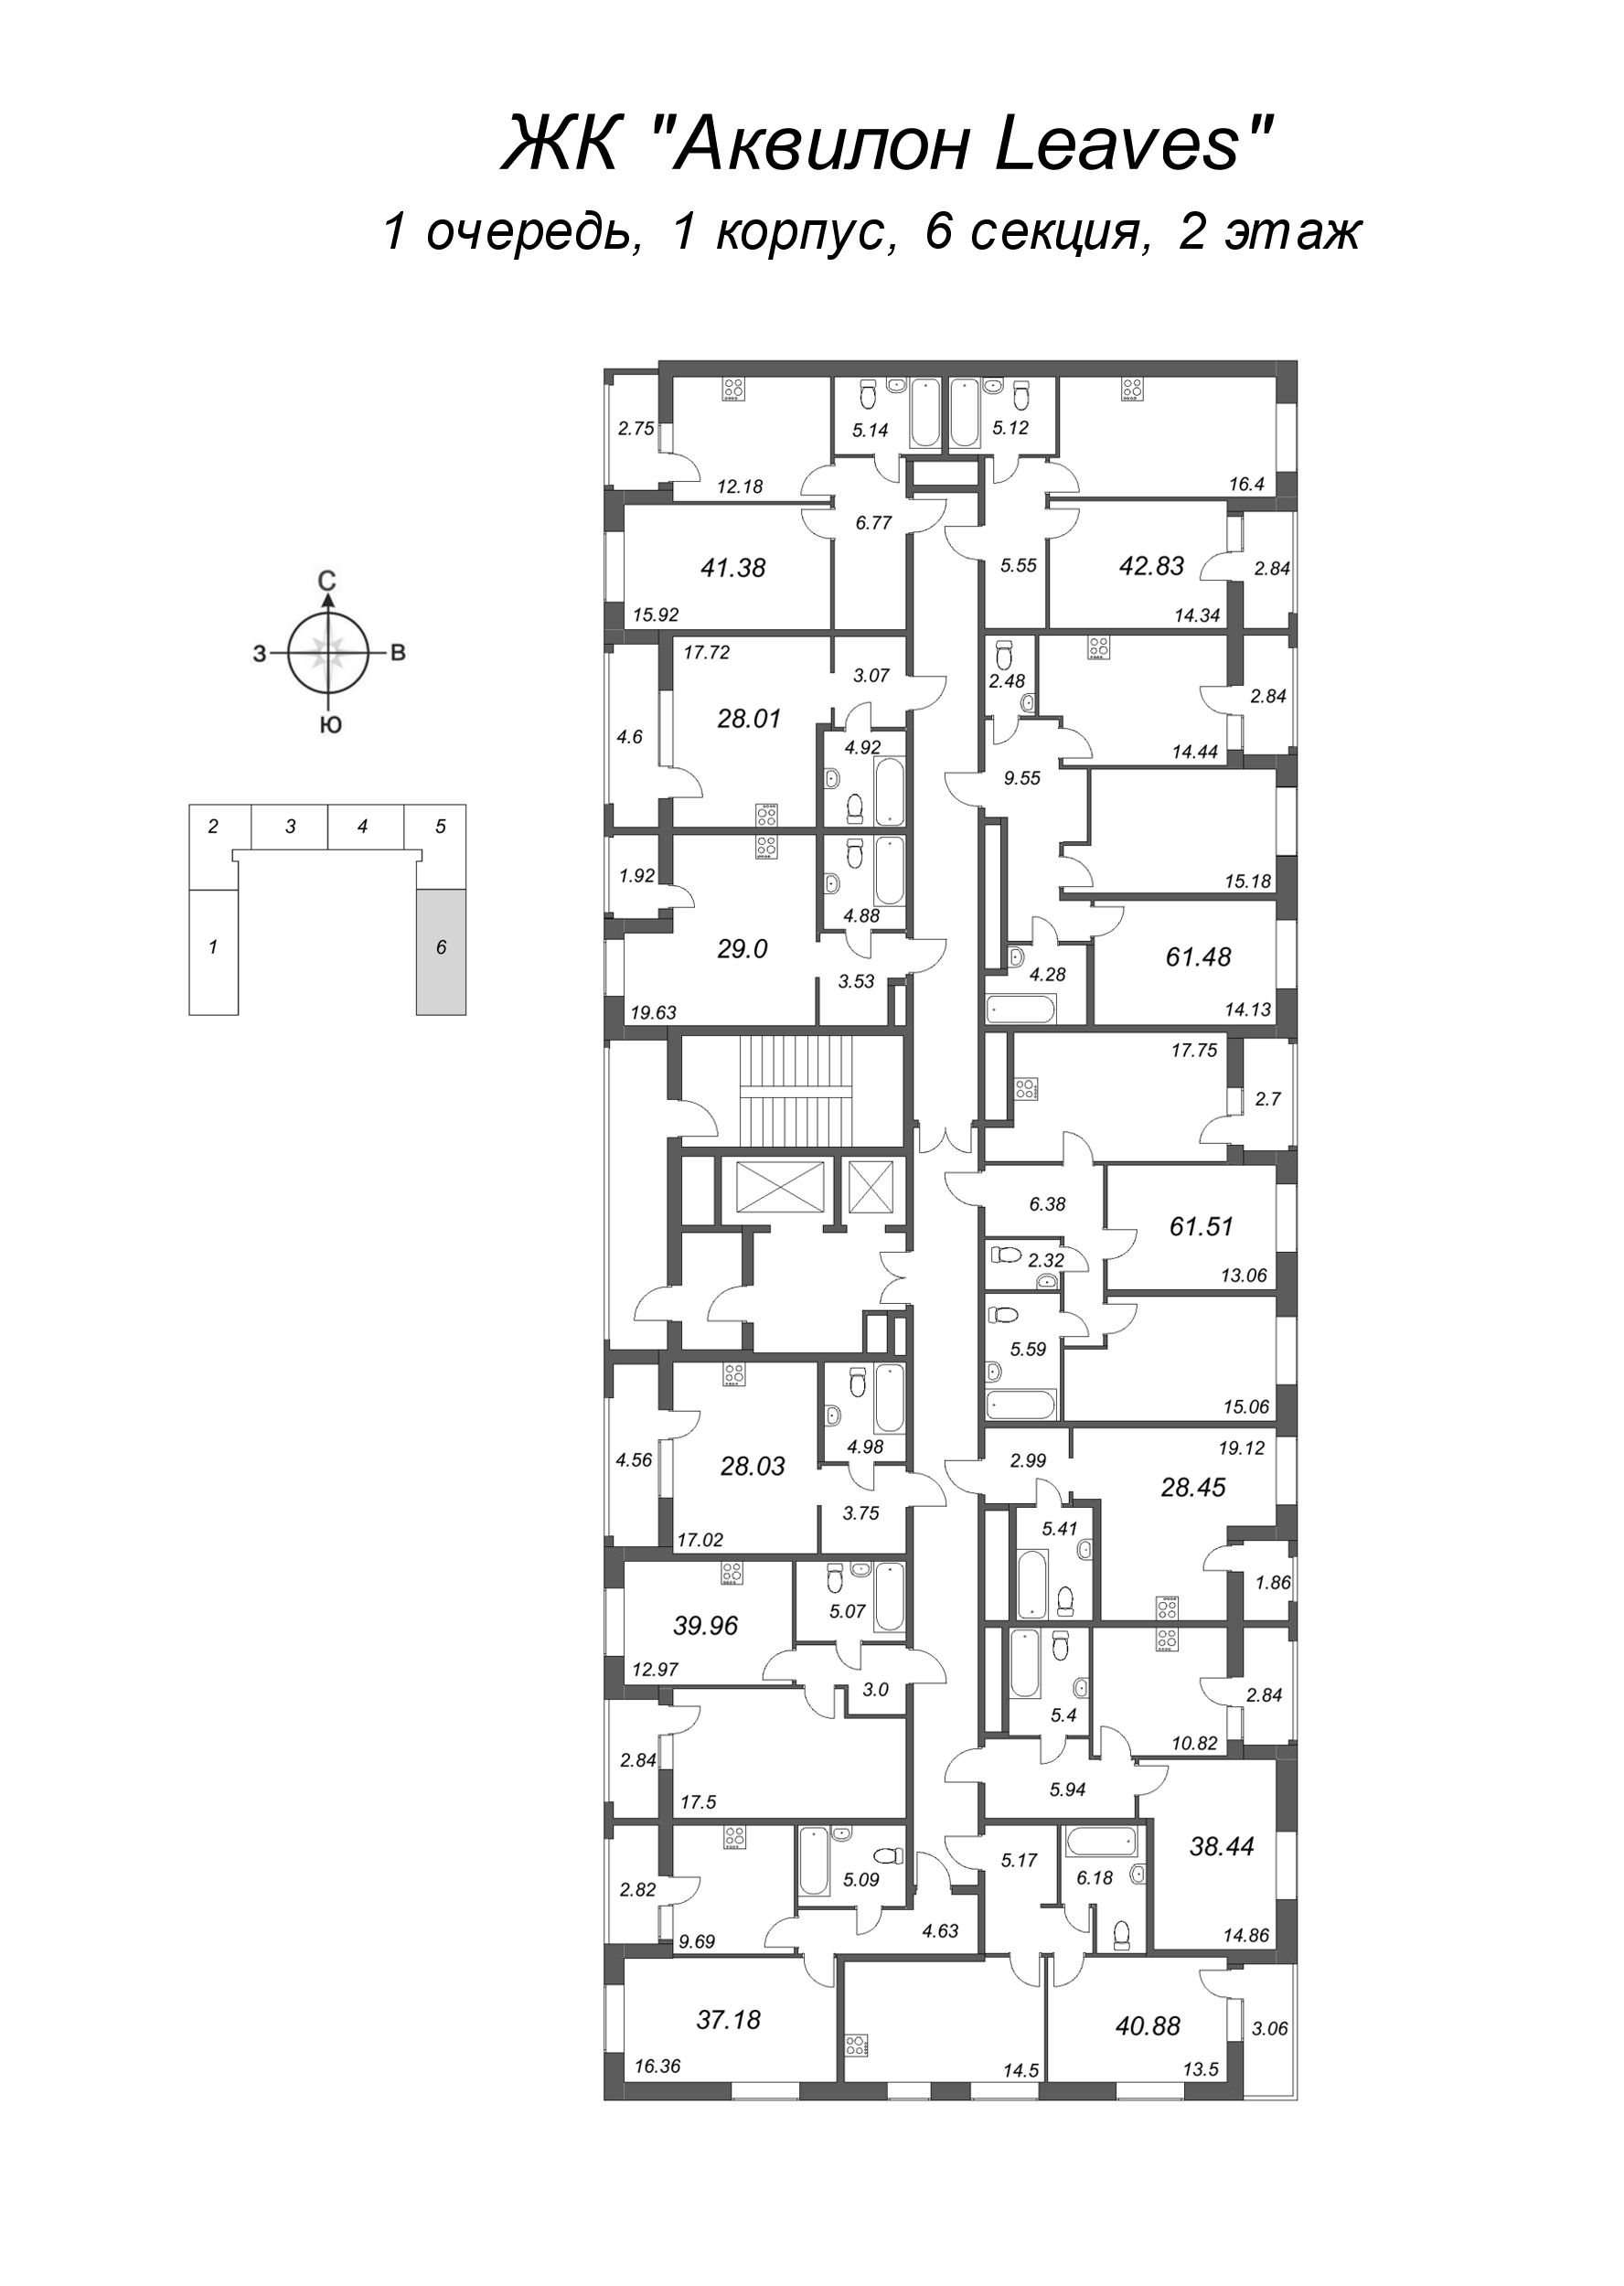 1-комнатная квартира, 38.44 м² в ЖК "Аквилон Leaves" - планировка этажа